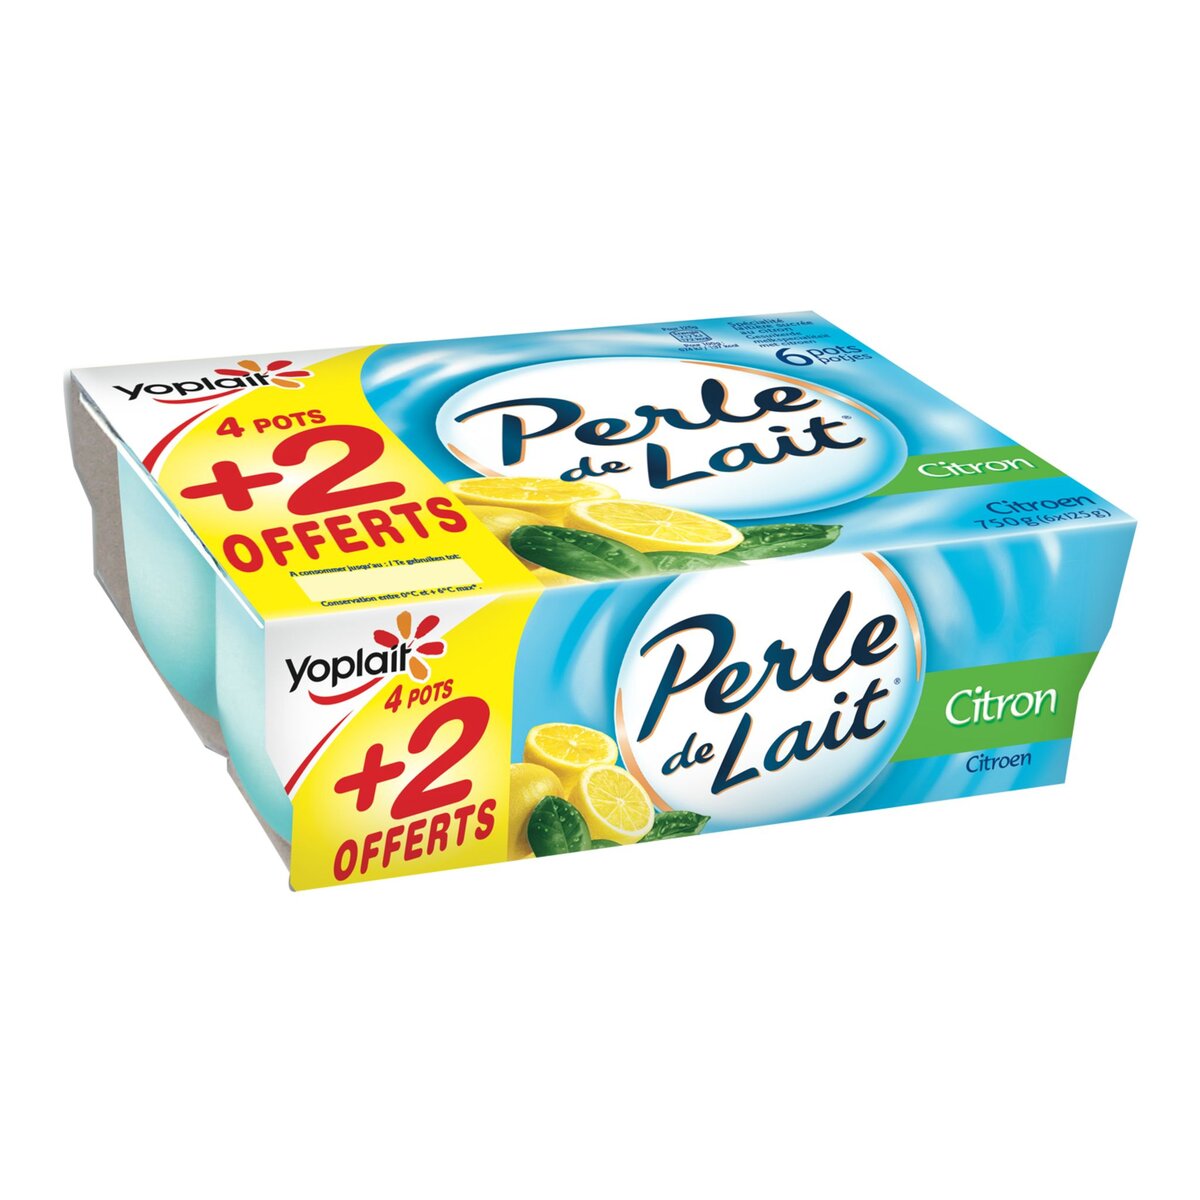 PERLE DE LAIT Perle de Lait citron 4x125g +2offerts